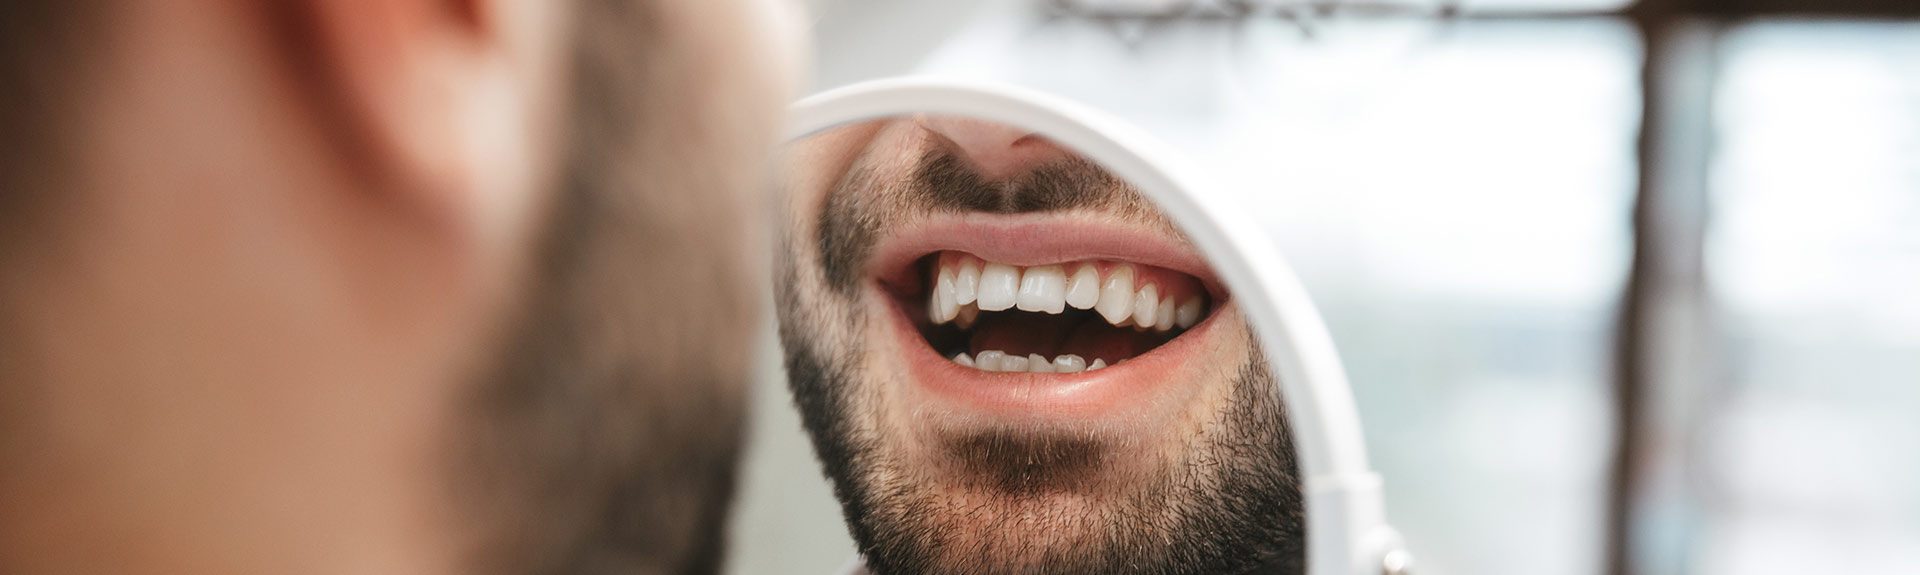 Unauffällige Zahnkorrektur Hamburg: transparente Zahnschienen